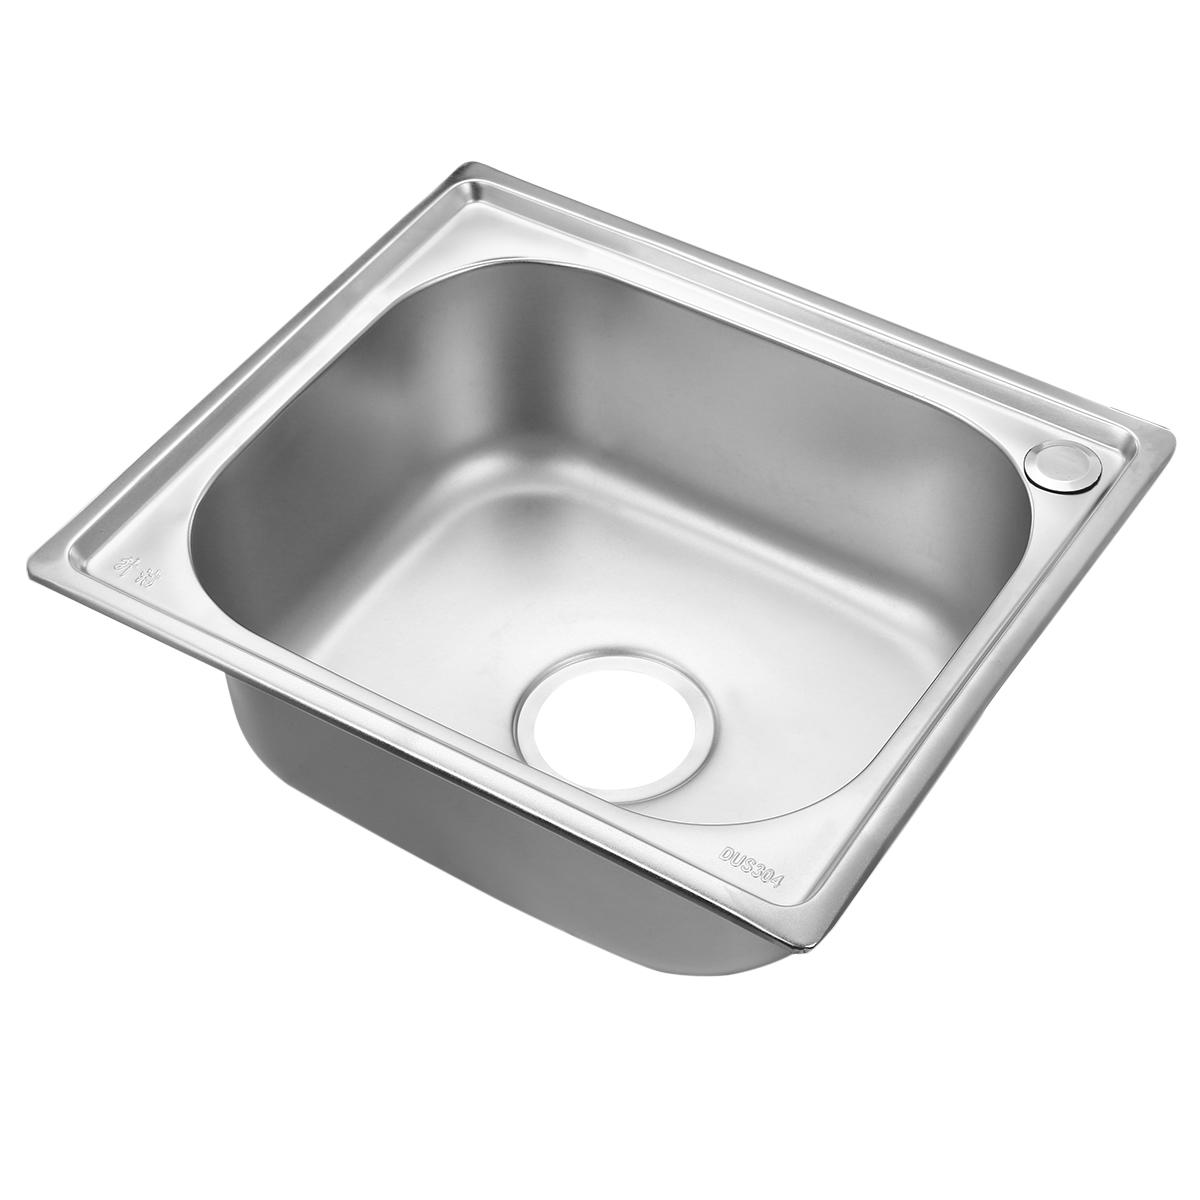 450x390x190mm 304 Stainless Steel Kitchen Sink Top Undermount